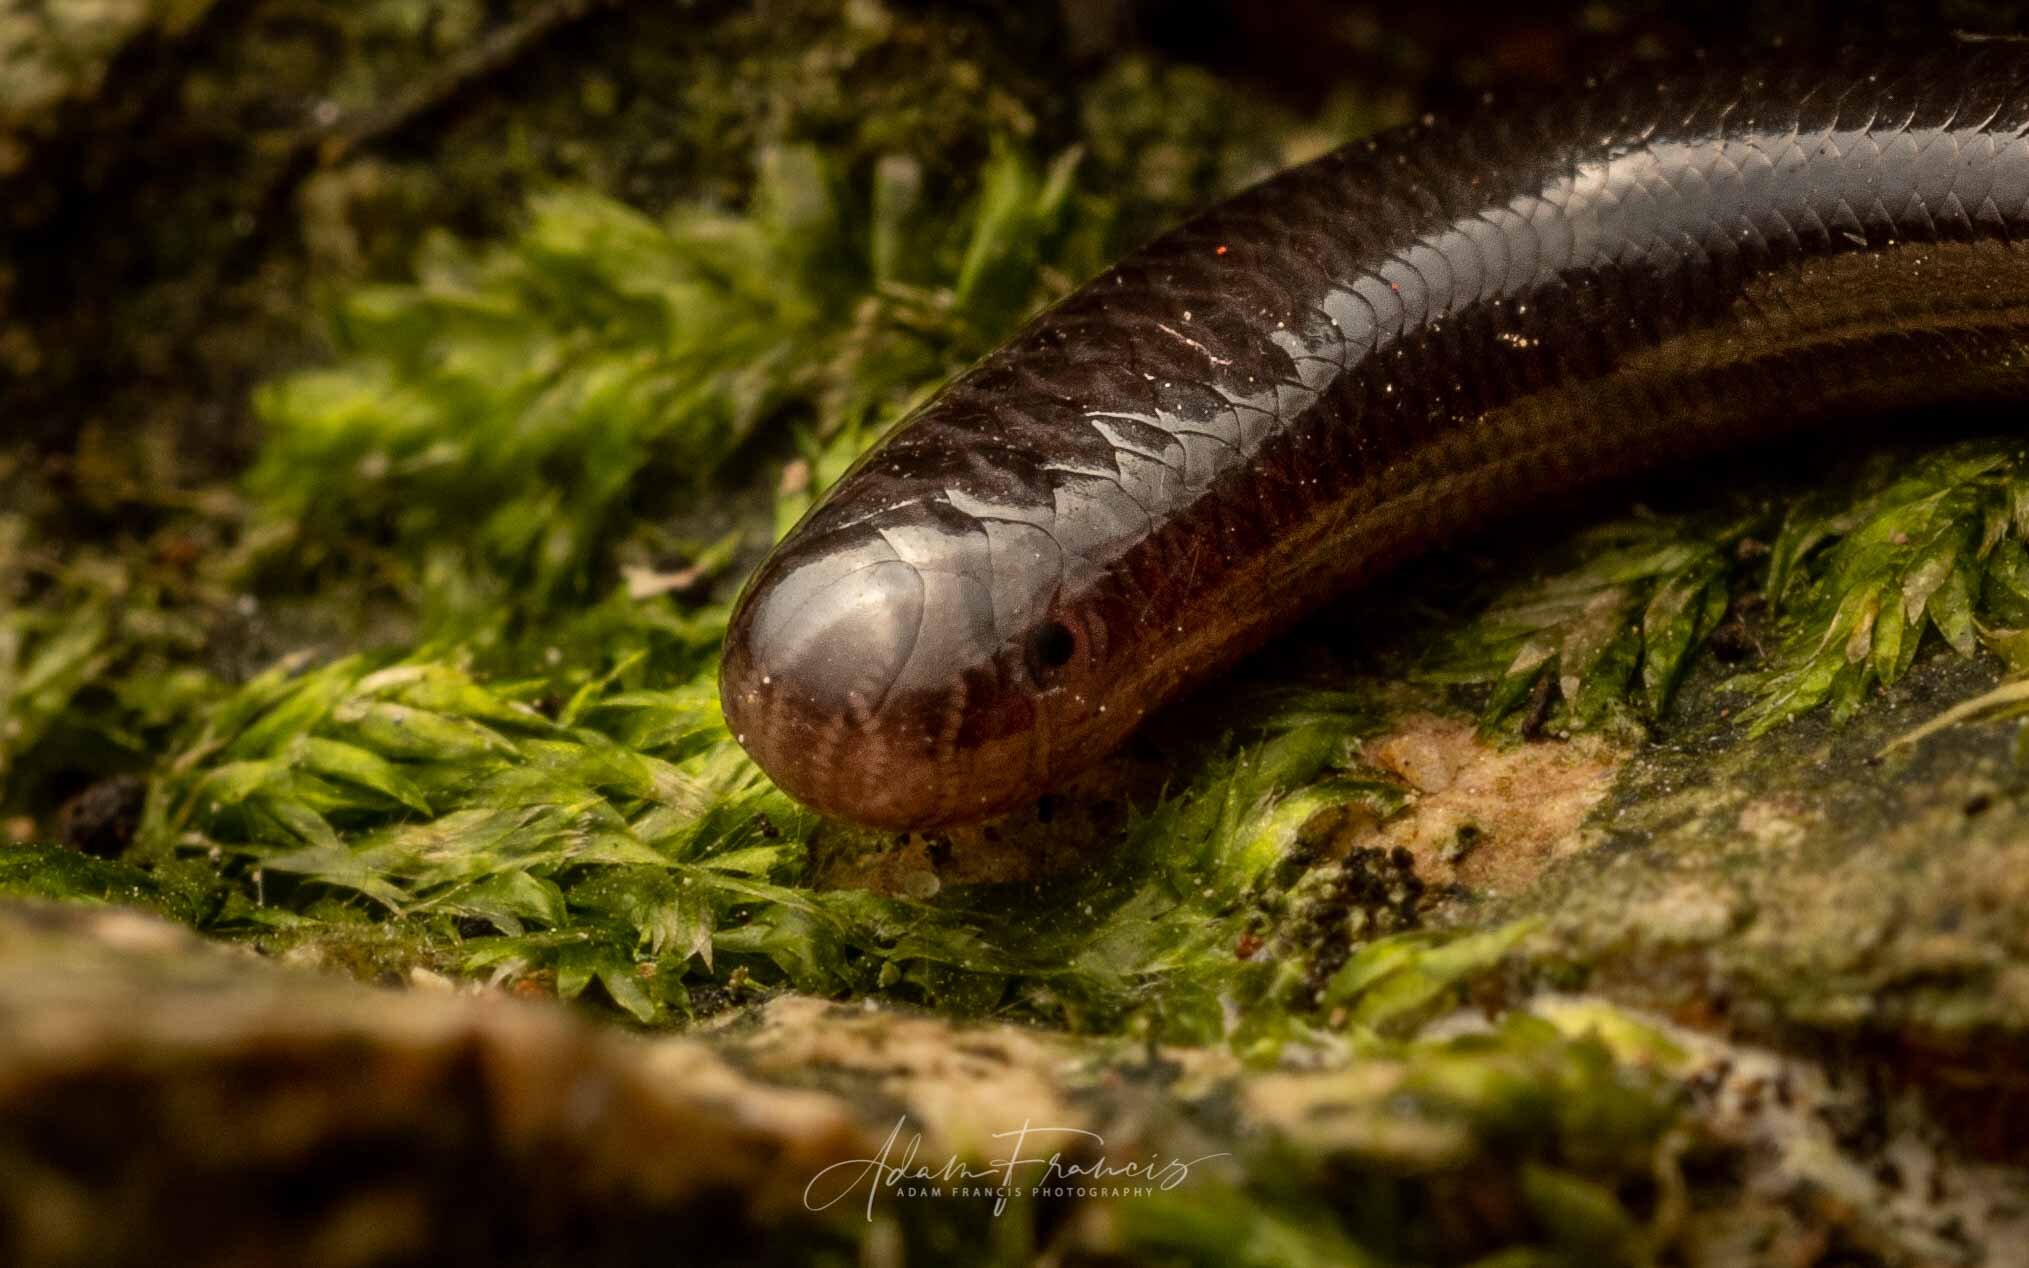 Common Blind Snake - Indotyphlops braminus